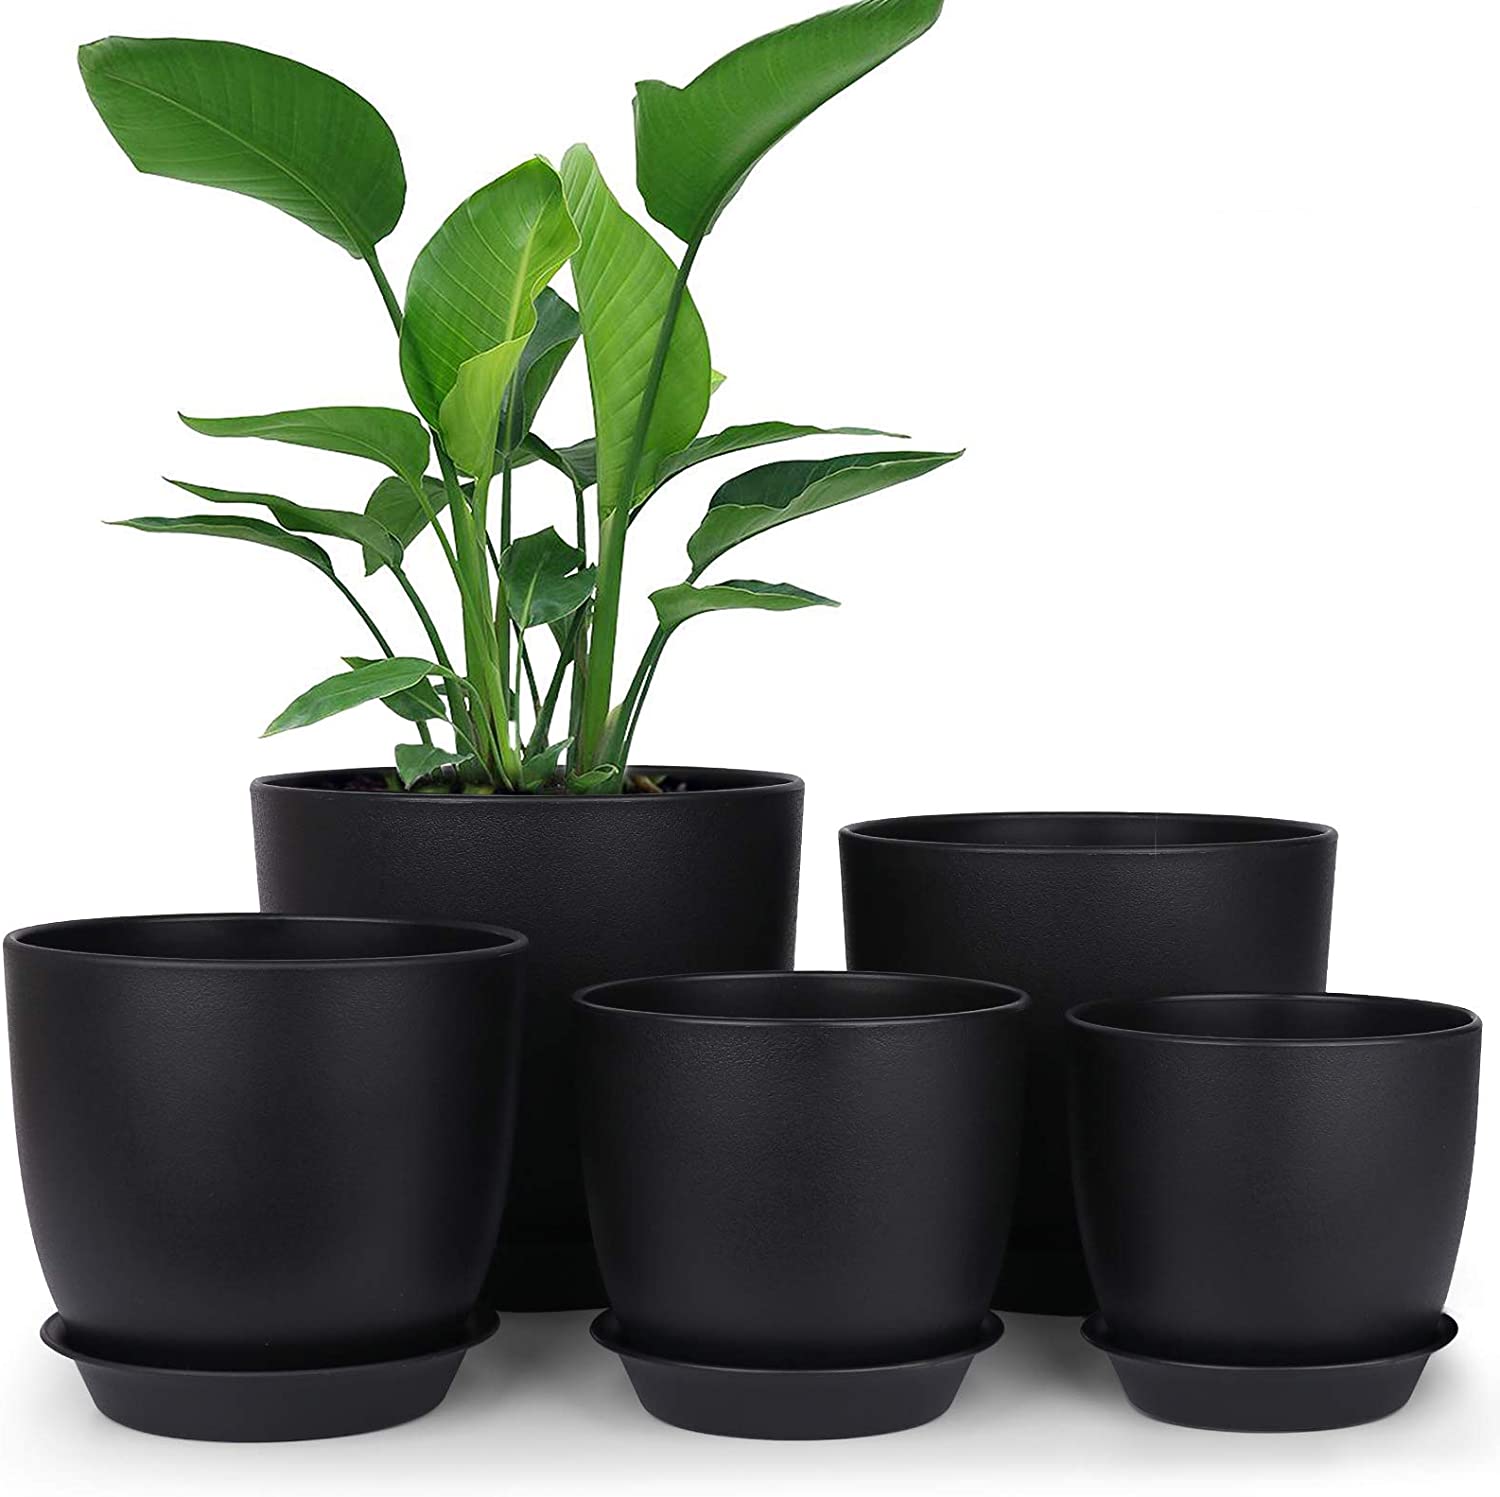 Modern Decorative Plastic Pots for Plants